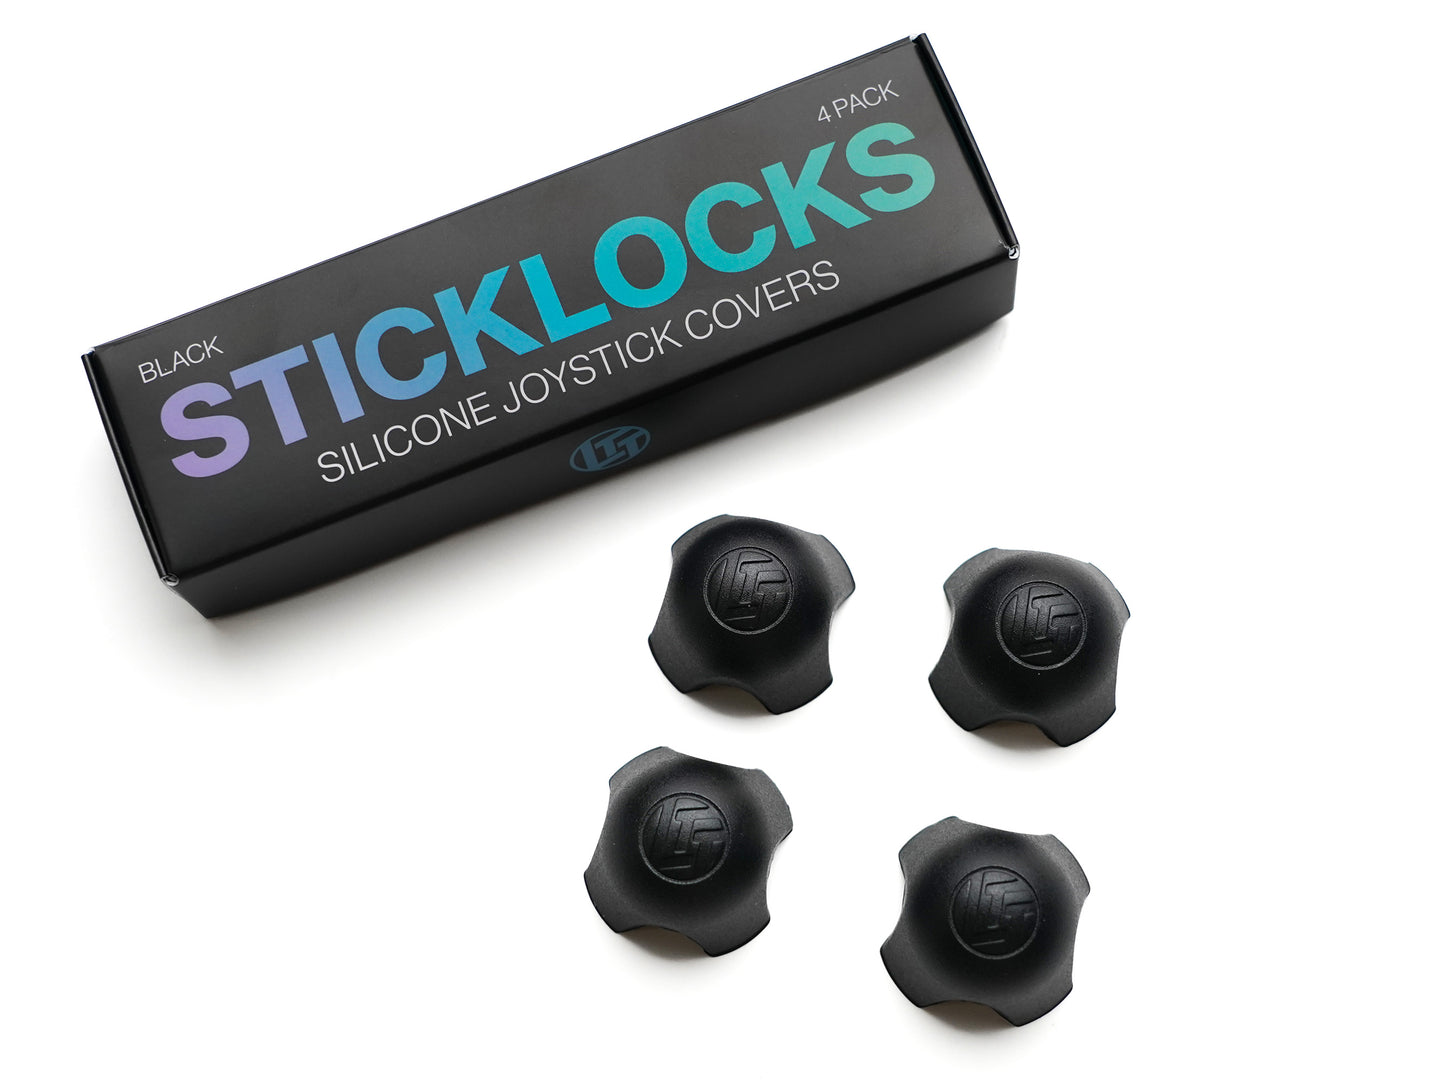 Sticklocks